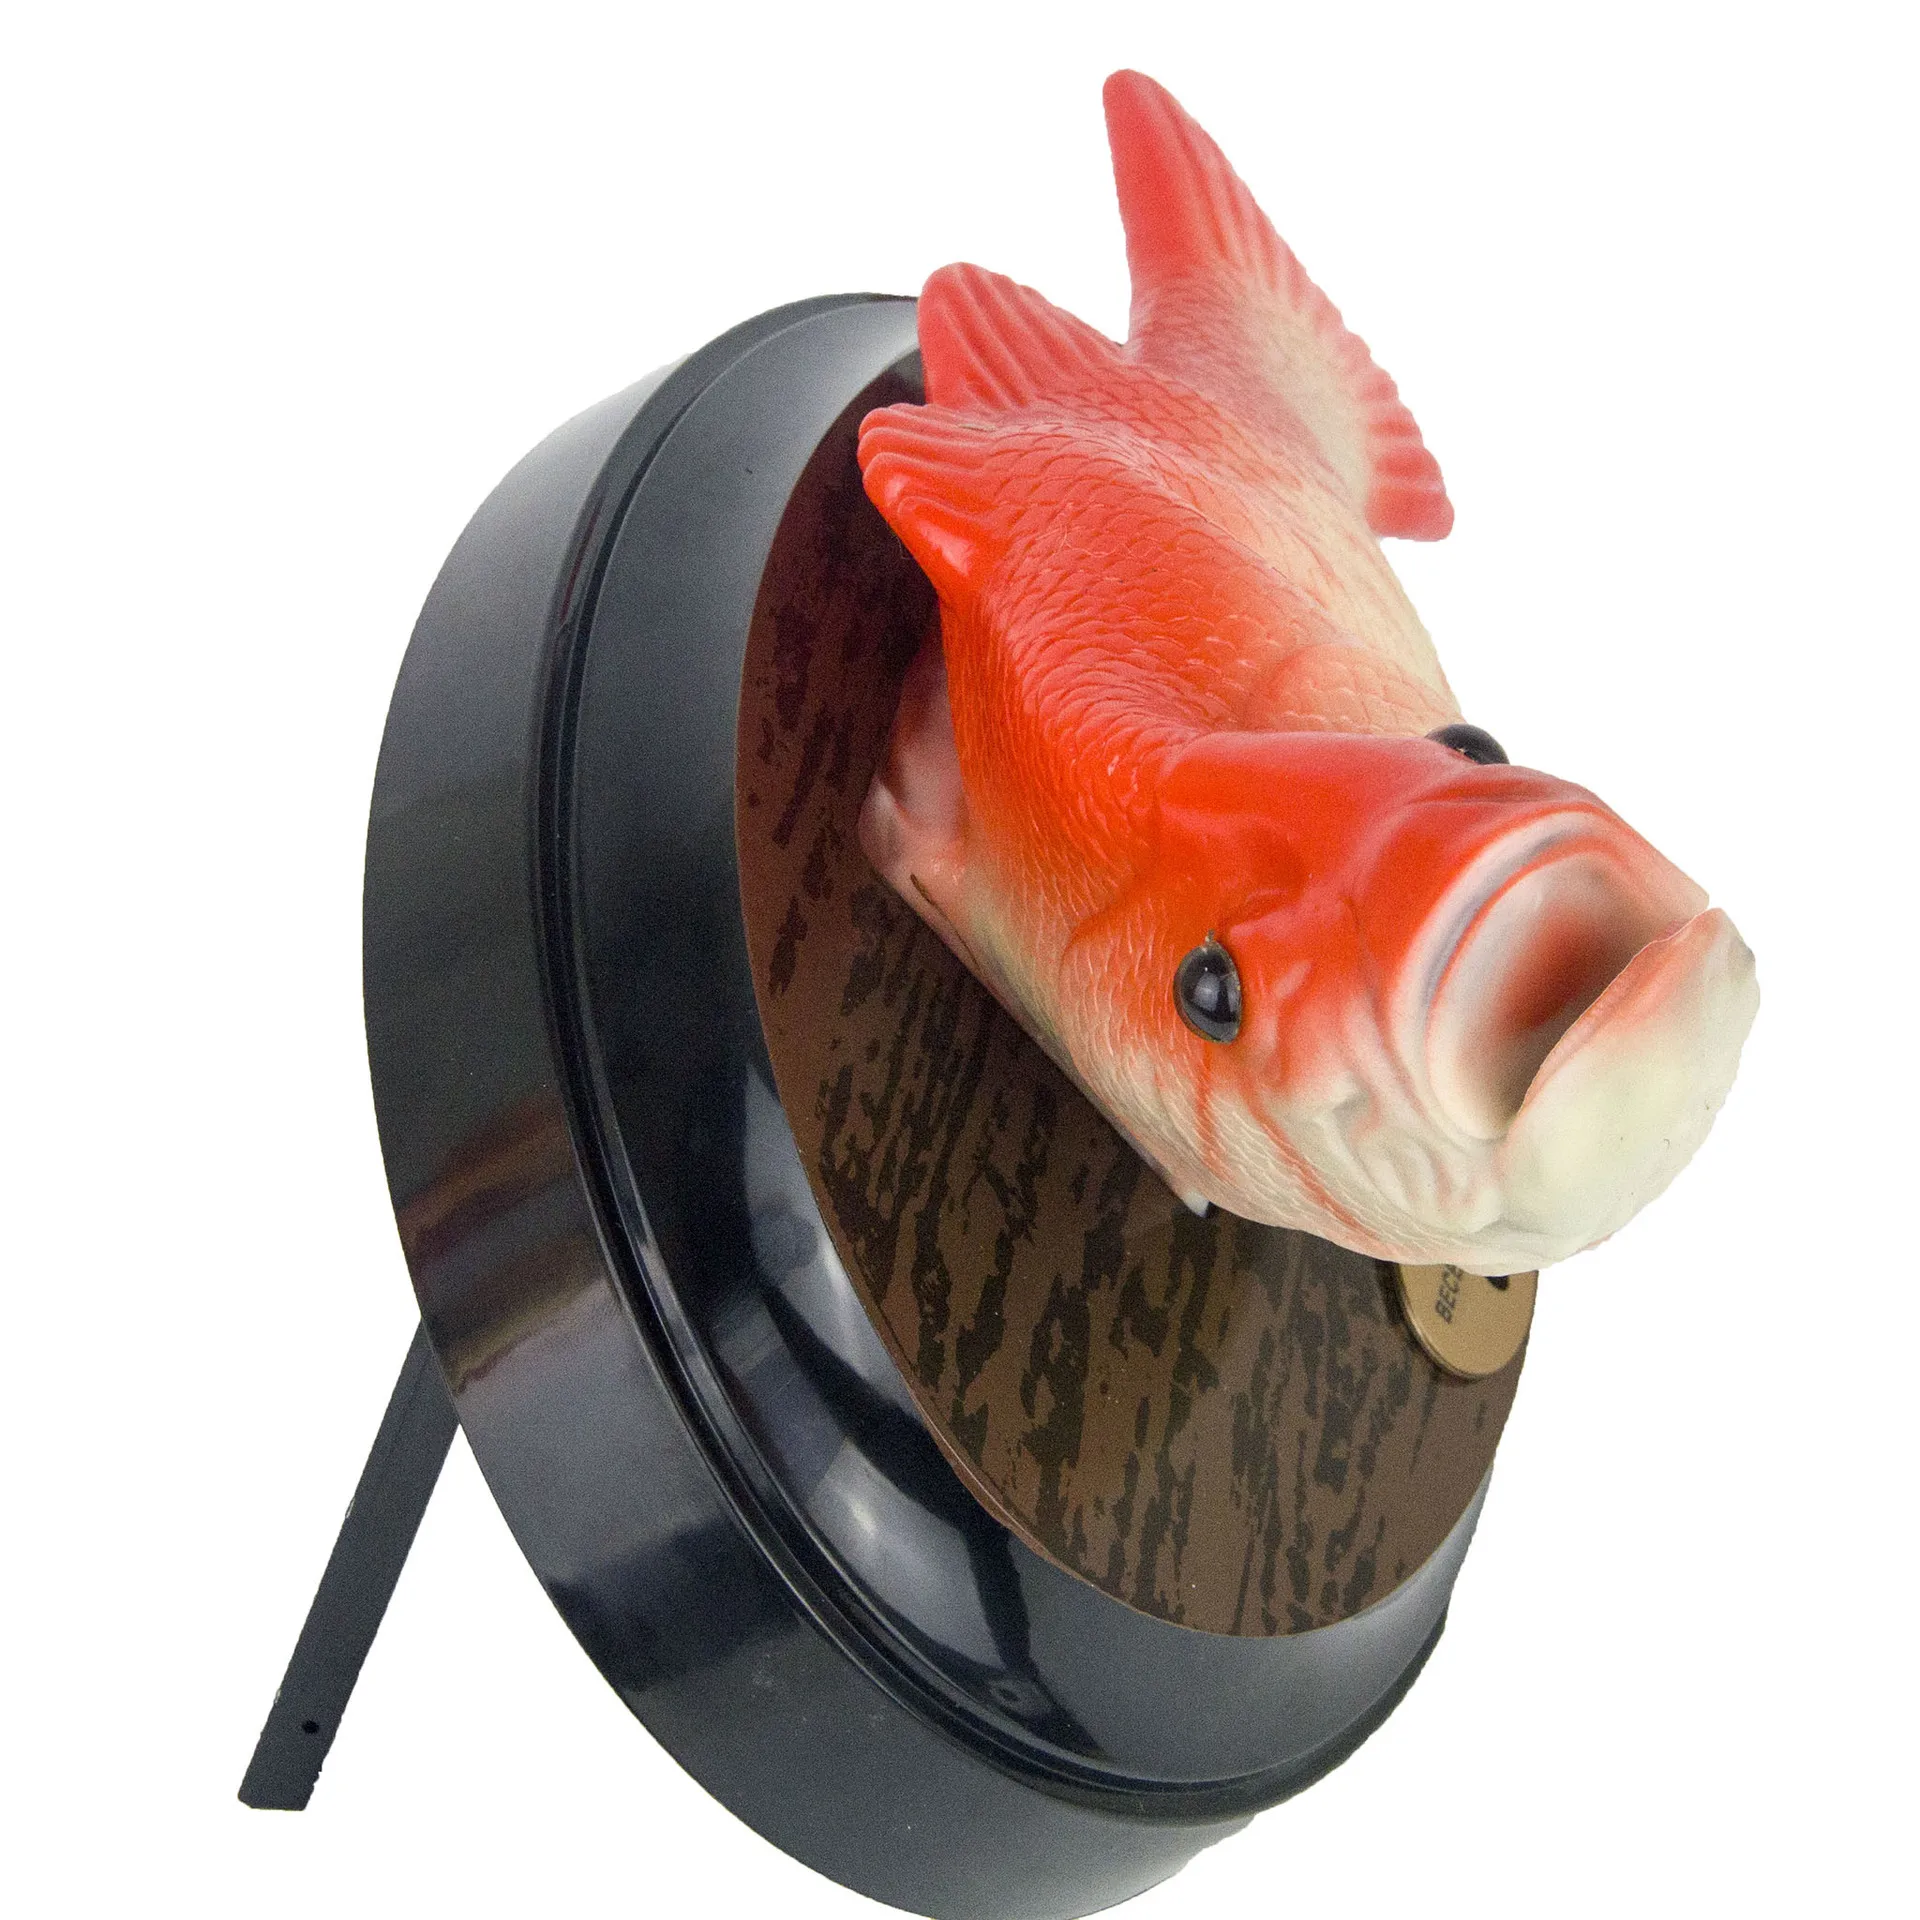 Забавный Робот рыбы электронная, Поющая игрушка Моделирование рыбы прыгать Батарея приведенный в действие Новинка пародия музыкальные игрушки украшения на хэлоуин, популярный товар